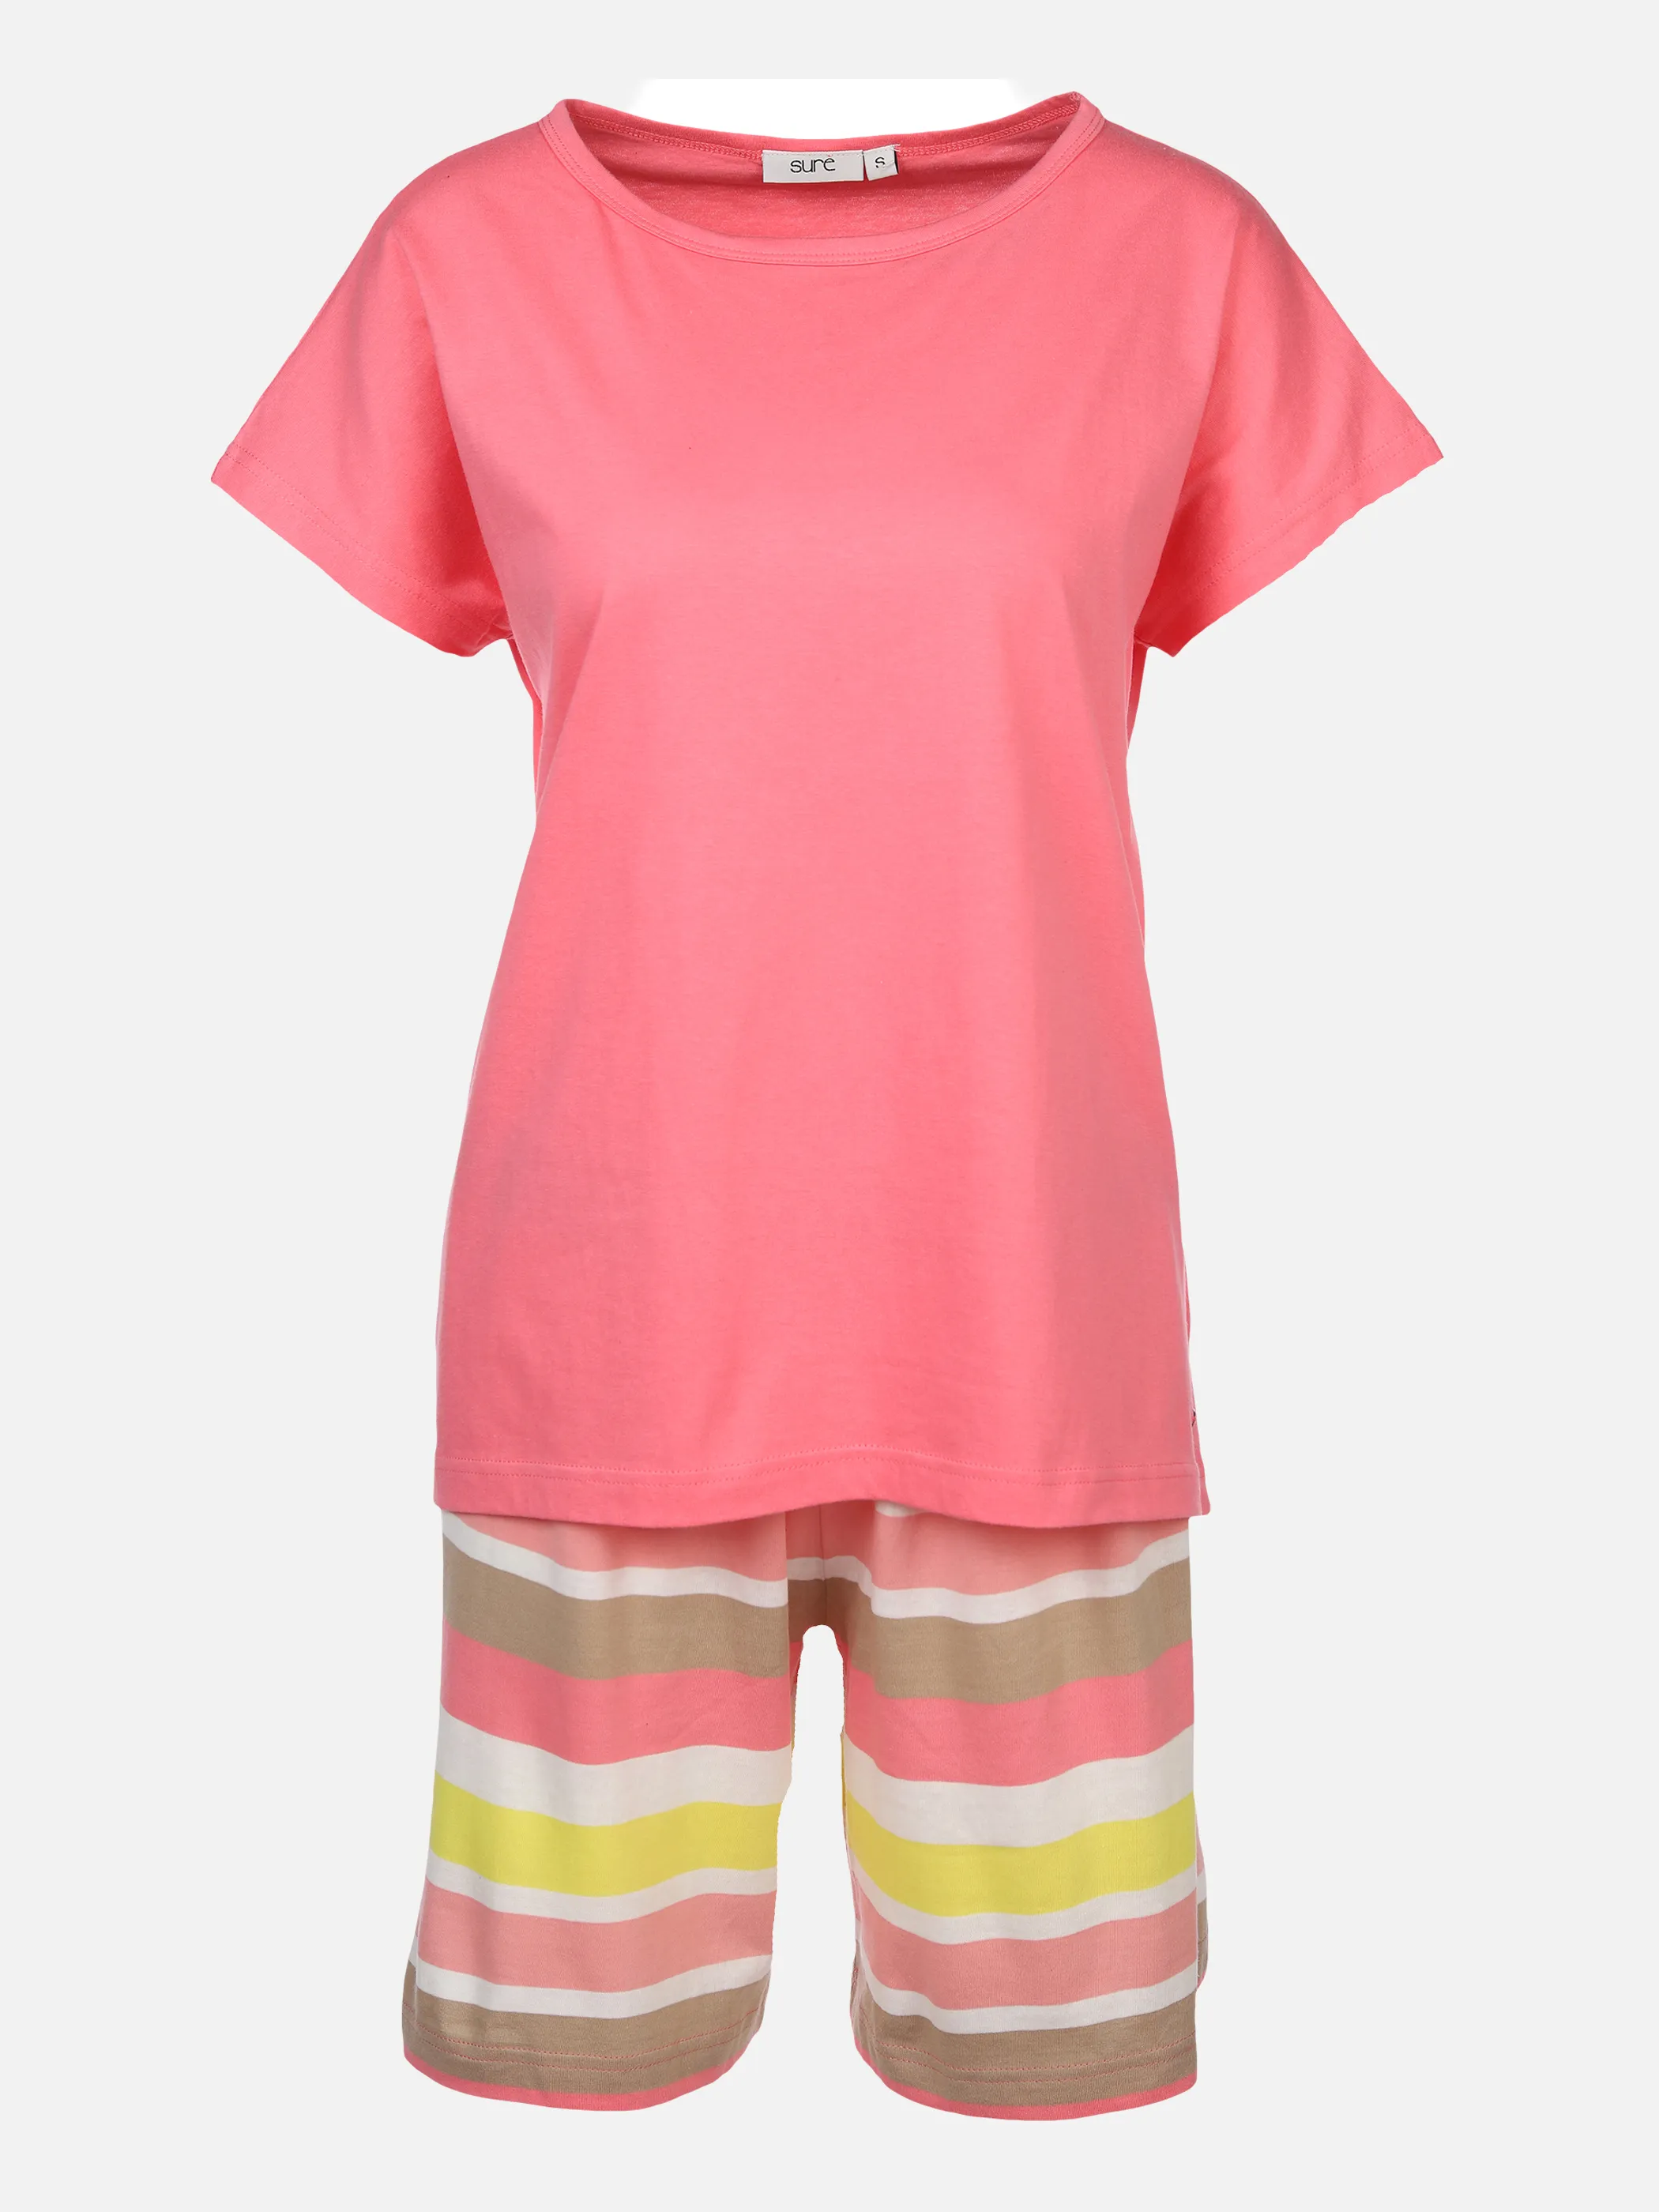 Sure Da Pyjama kurz Shirt 1/2 + Ber Orange 874050 PEACH 1